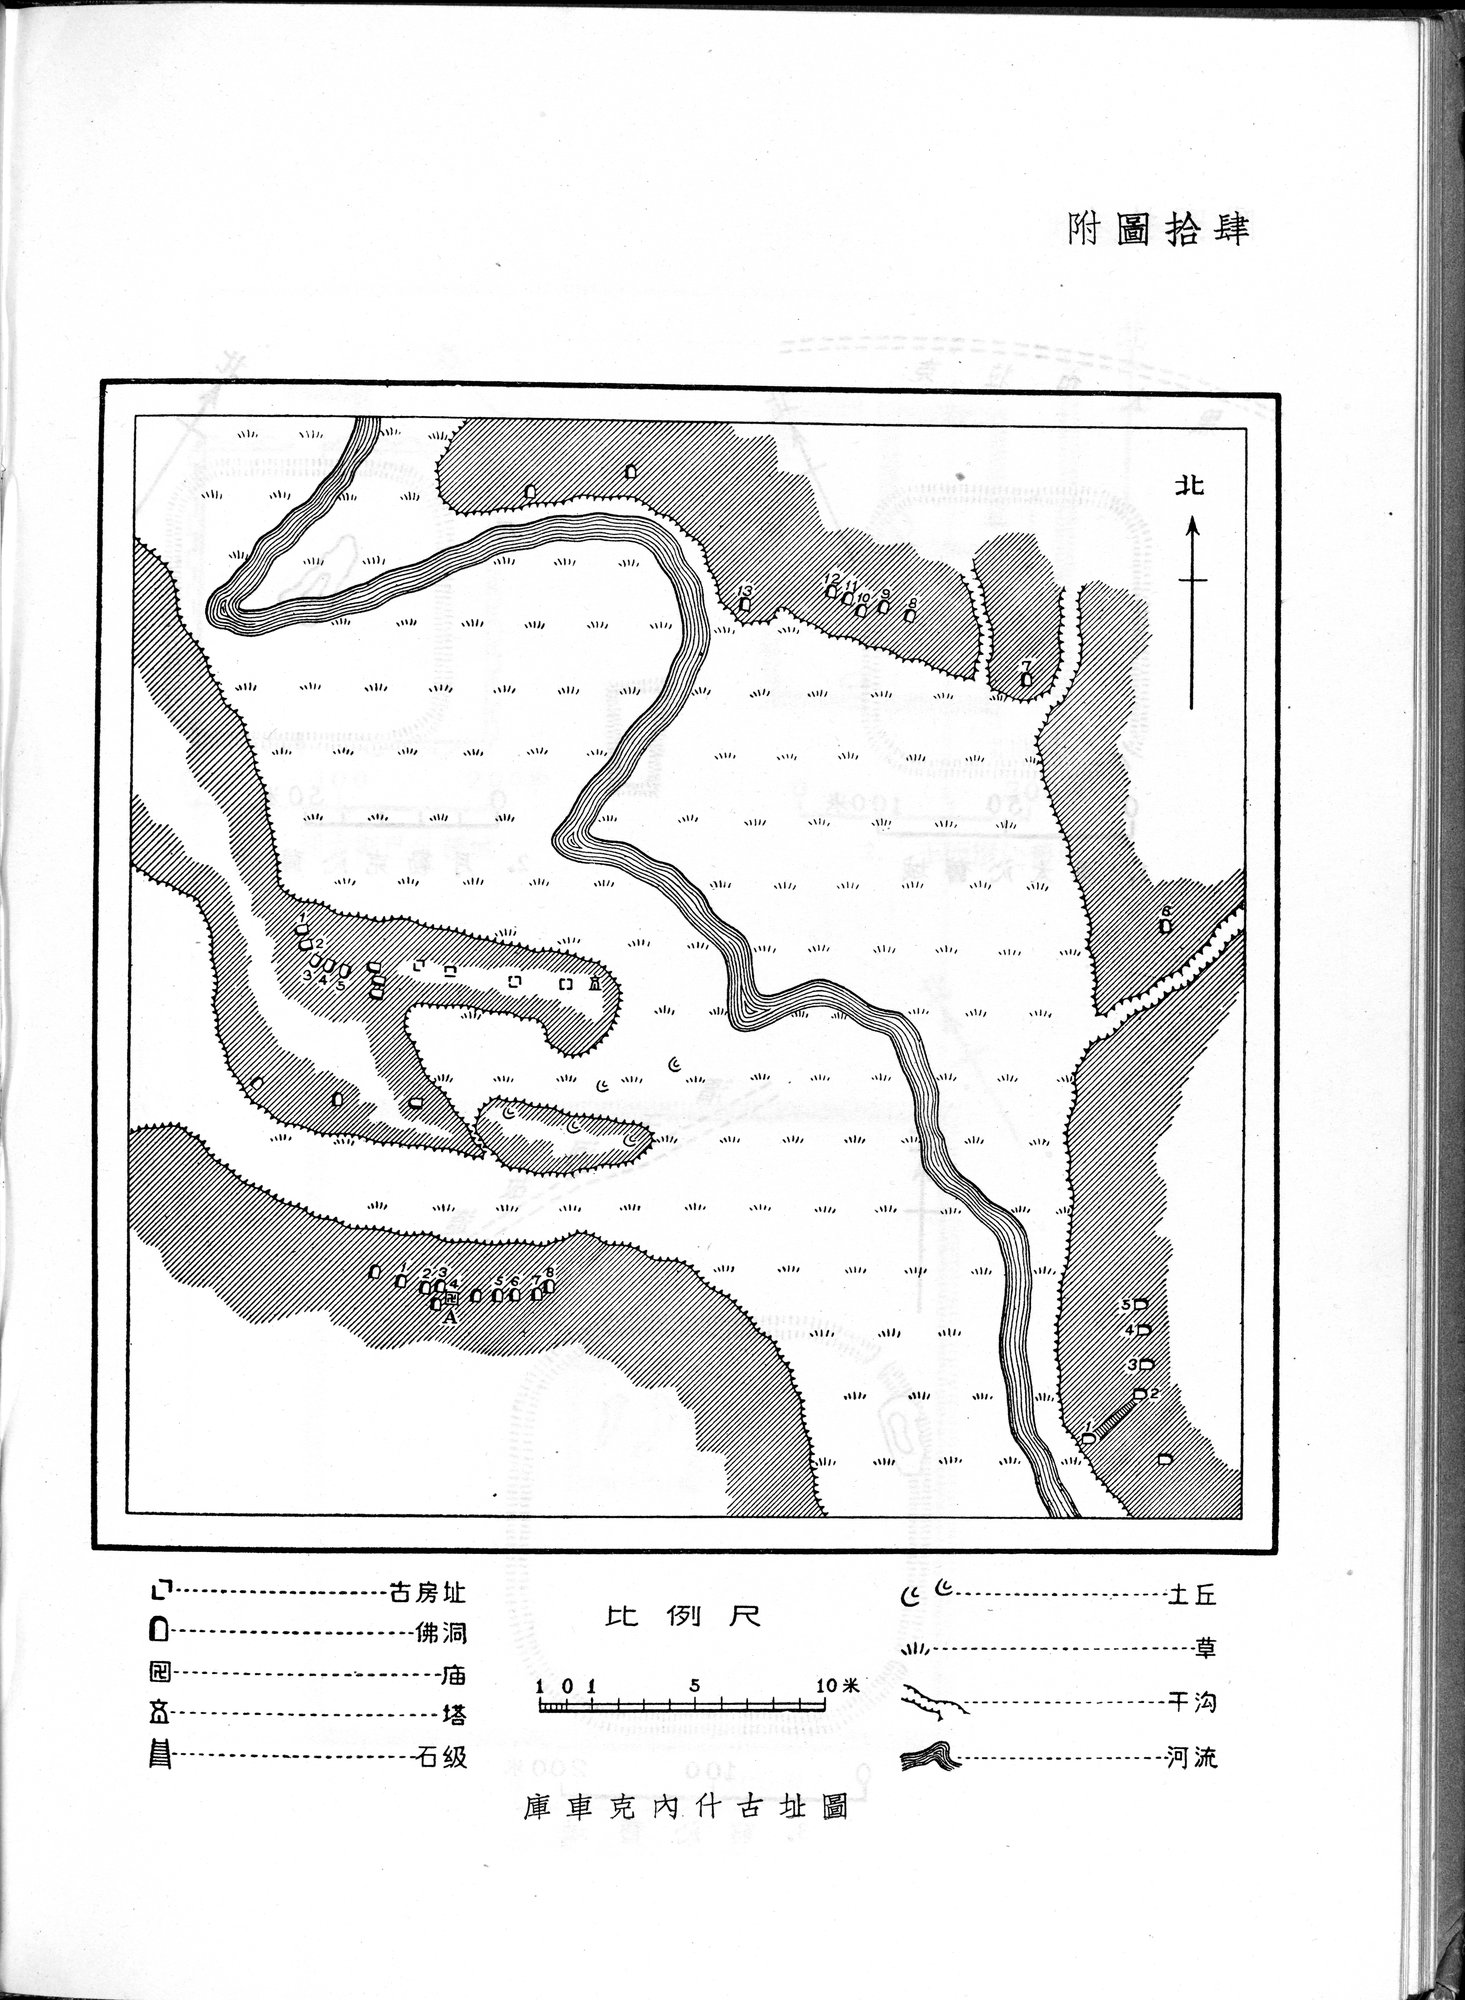 塔里木盆地考古記 : vol.1 / Page 120 (Grayscale High Resolution Image)